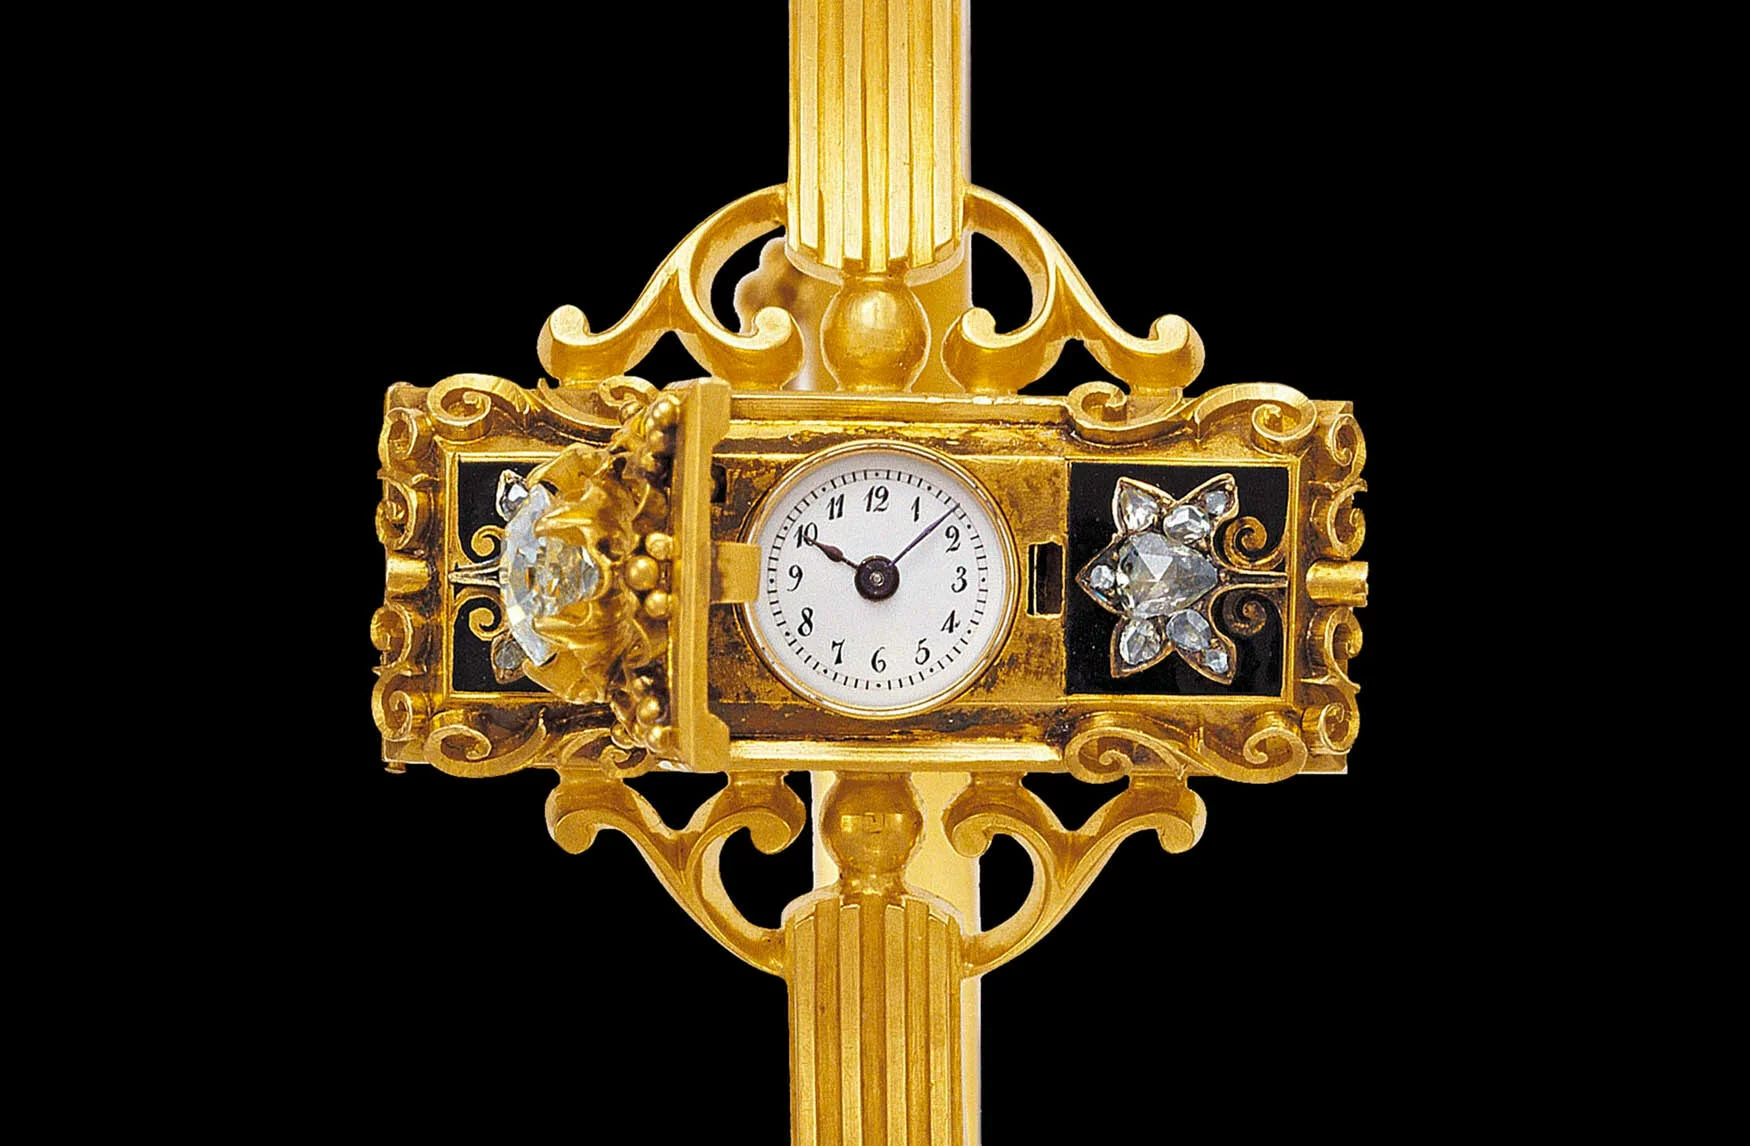 Stunning Rolex 1920-1930s Ladies 9ct Yellow Gold Cocktail Watch Ref 45592 |  eBay